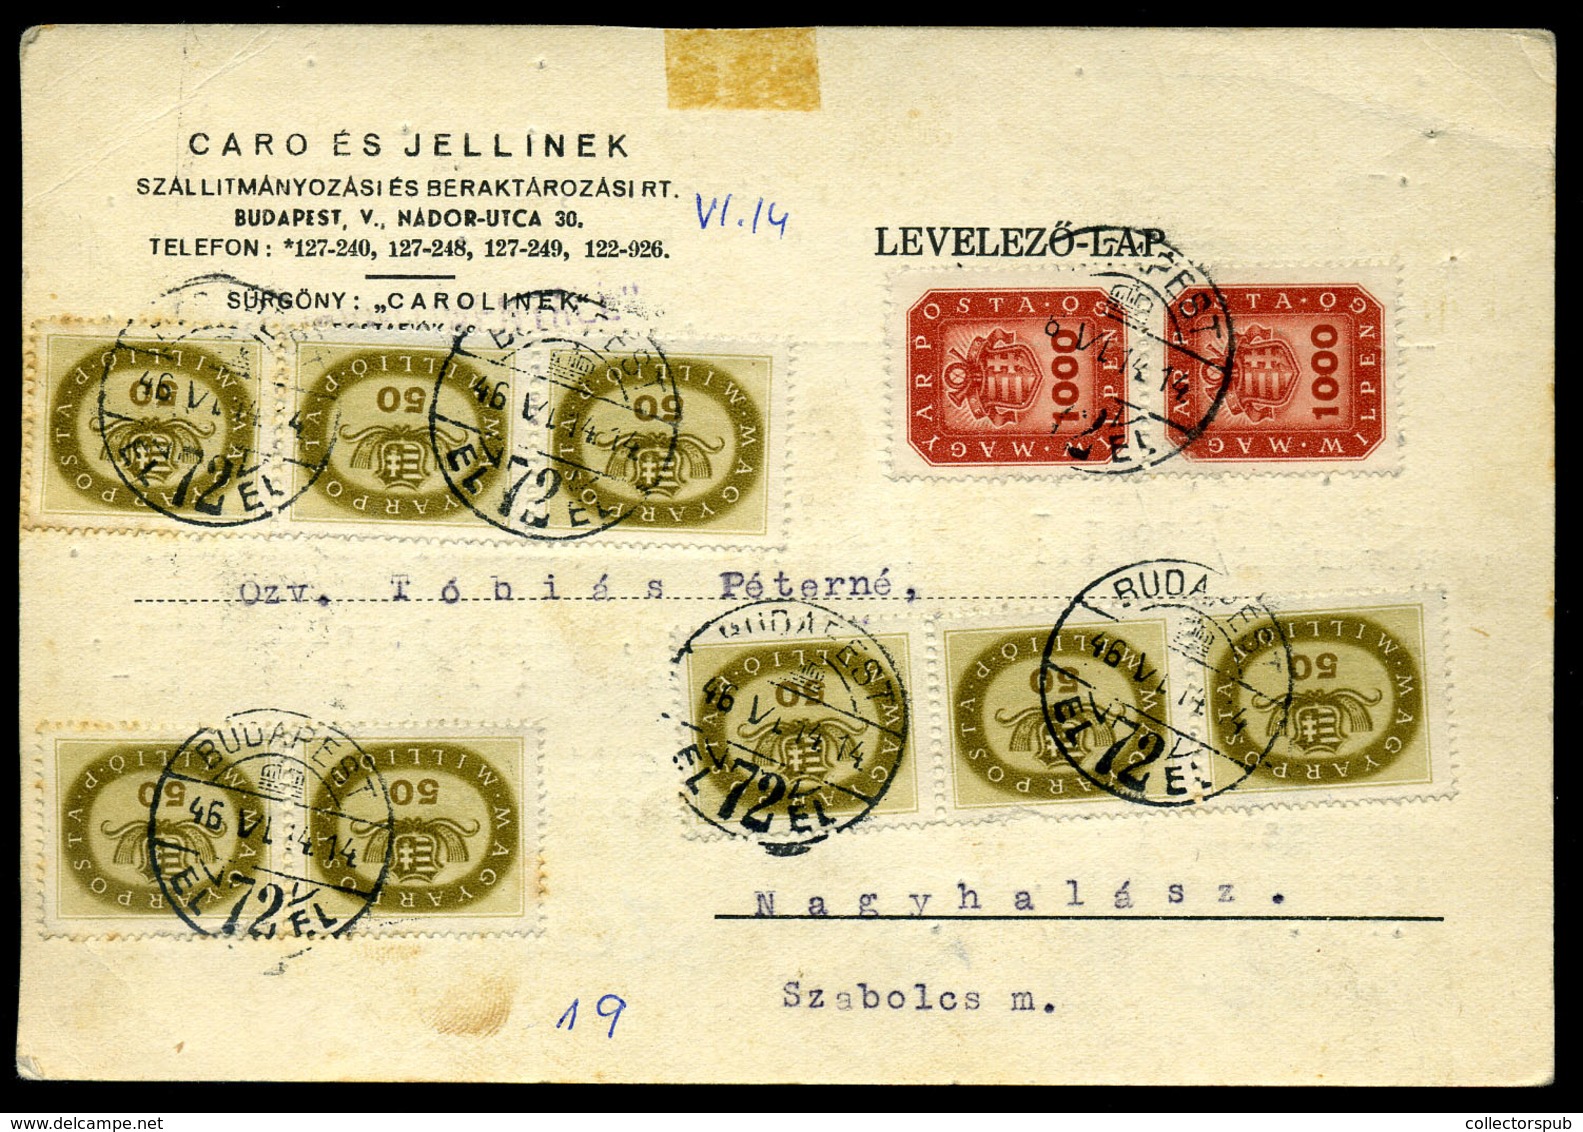 BUDAPEST 1946. Céges Infla Levlap Nagyhalászra / Period19 Domestic Postcard 8x50+2x1000millioP Budapest To Nagyhalasz - Covers & Documents